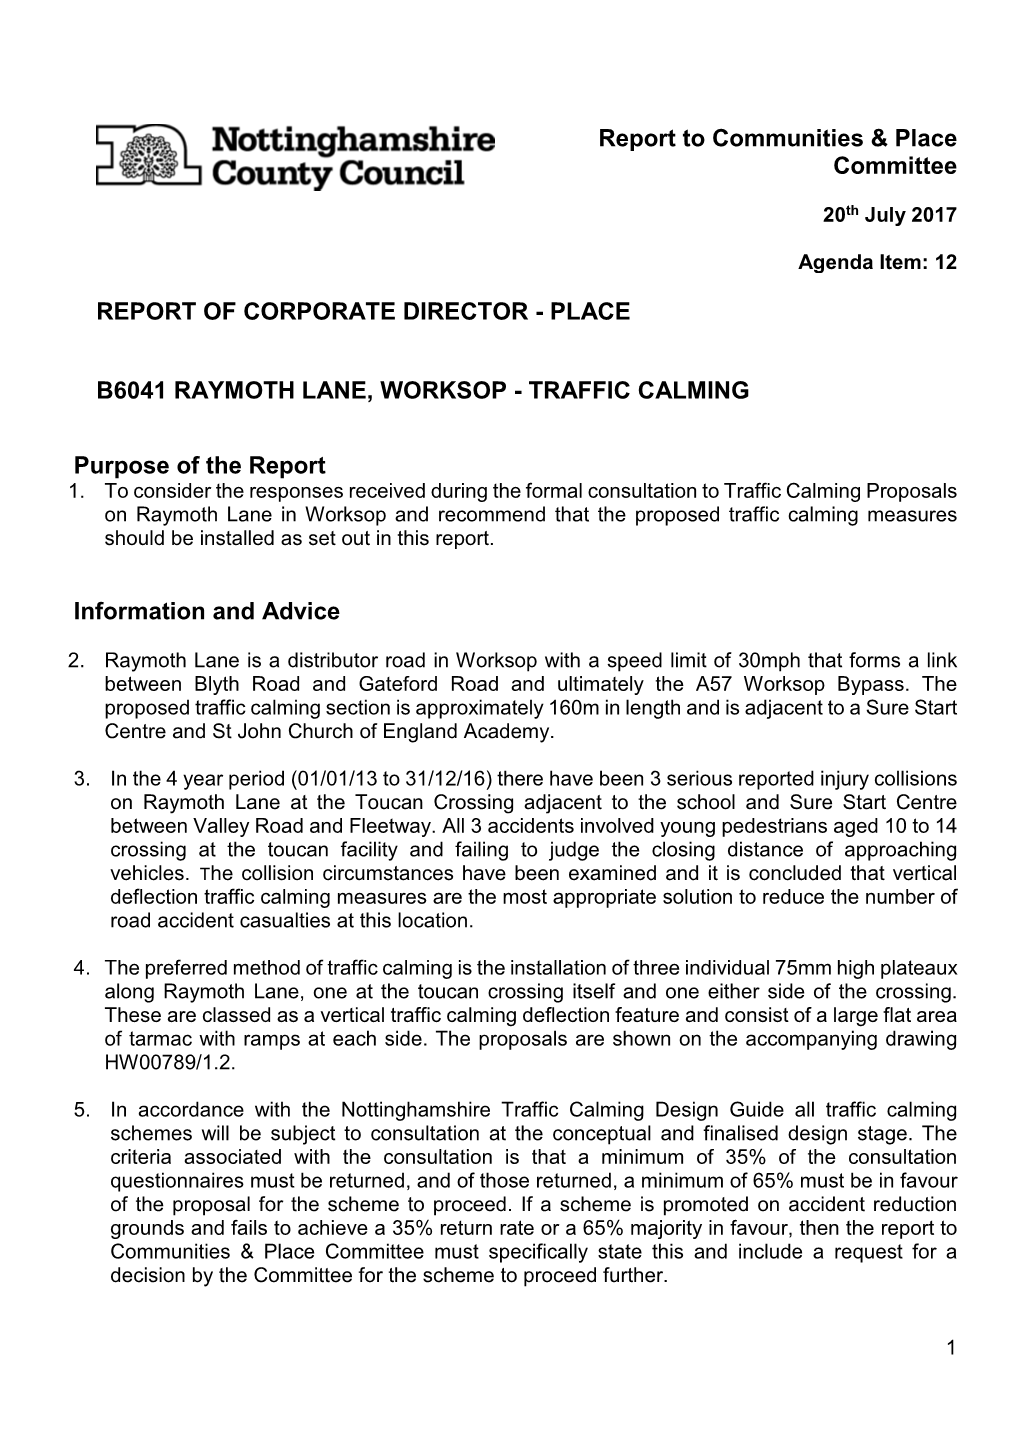 B6041 Raymoth Lane Worksop -Traffic Calming